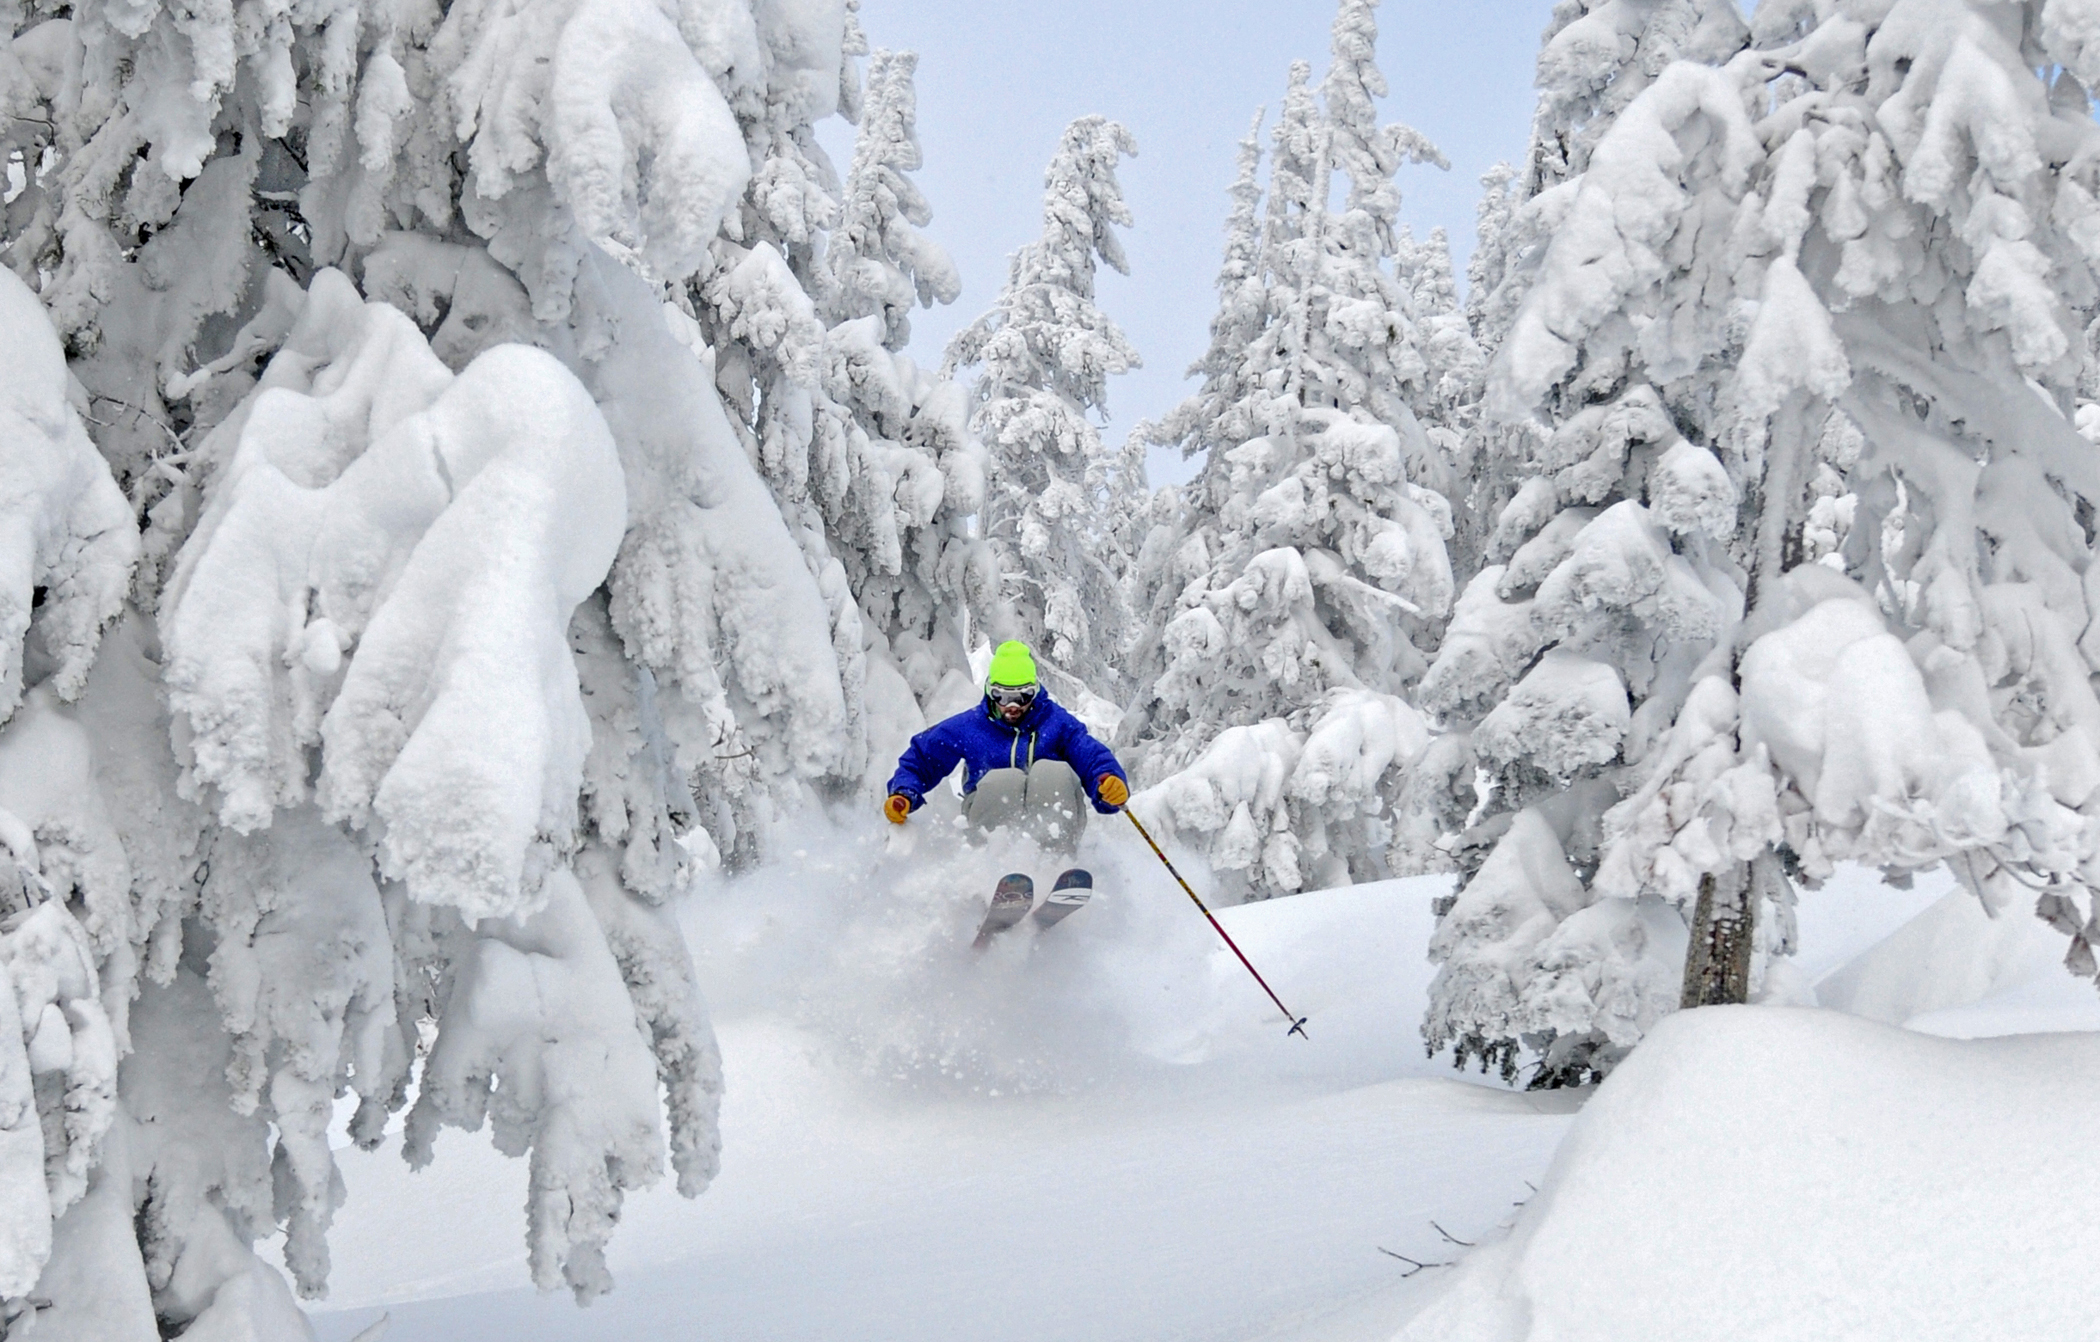 Powder Skiing Wallpaper Wallpapersafari throughout How To Ski Powder In Trees